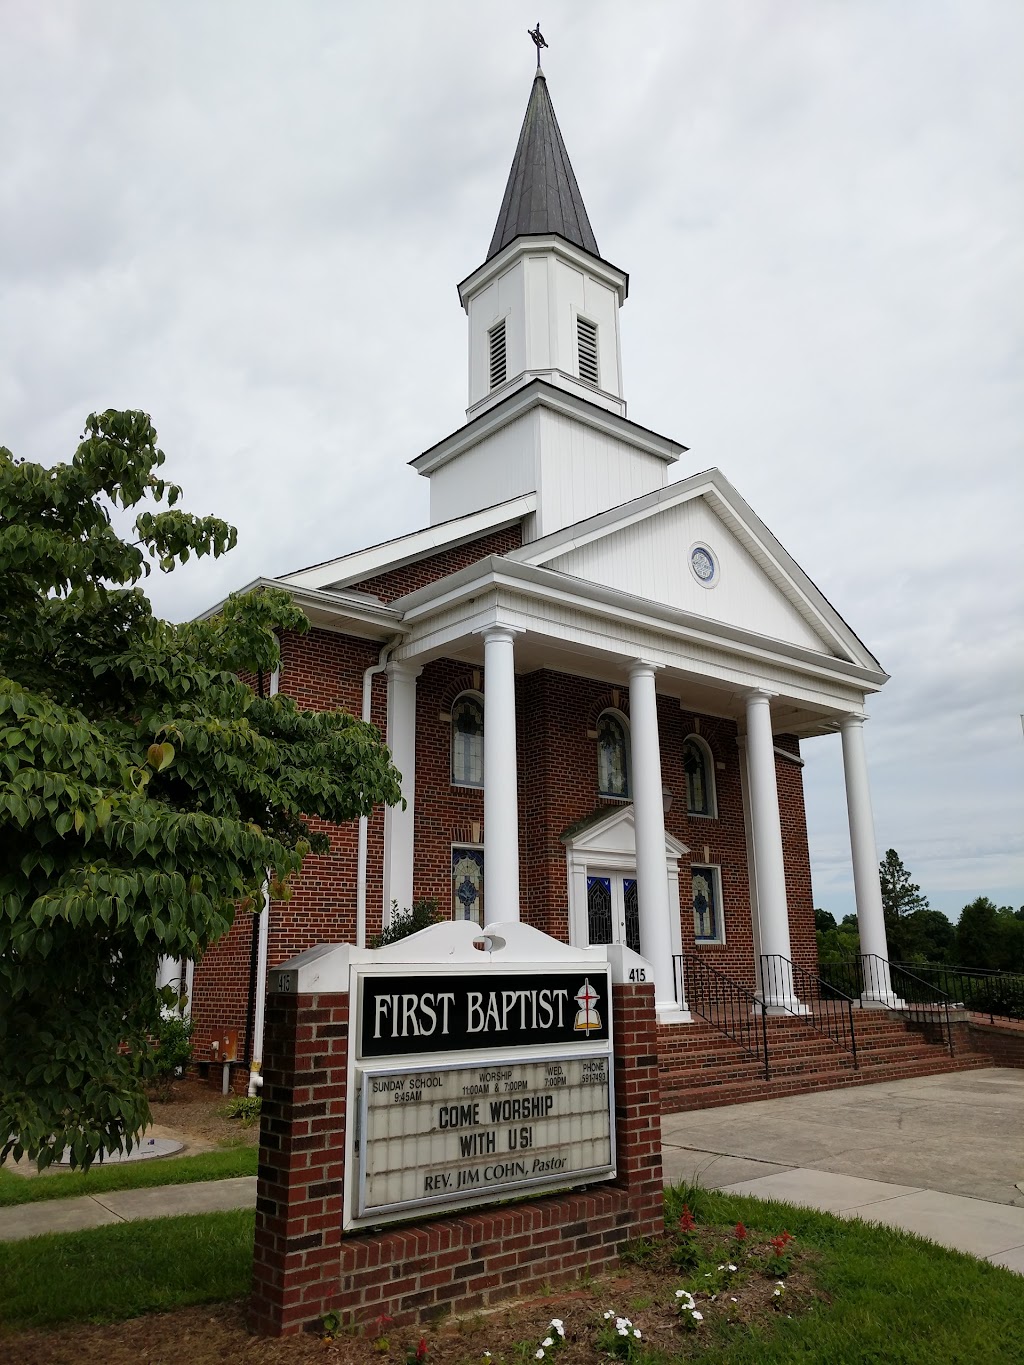 First Baptist Church | 415 Summit St, Walnut Cove, NC 27052 | Phone: (336) 591-7493